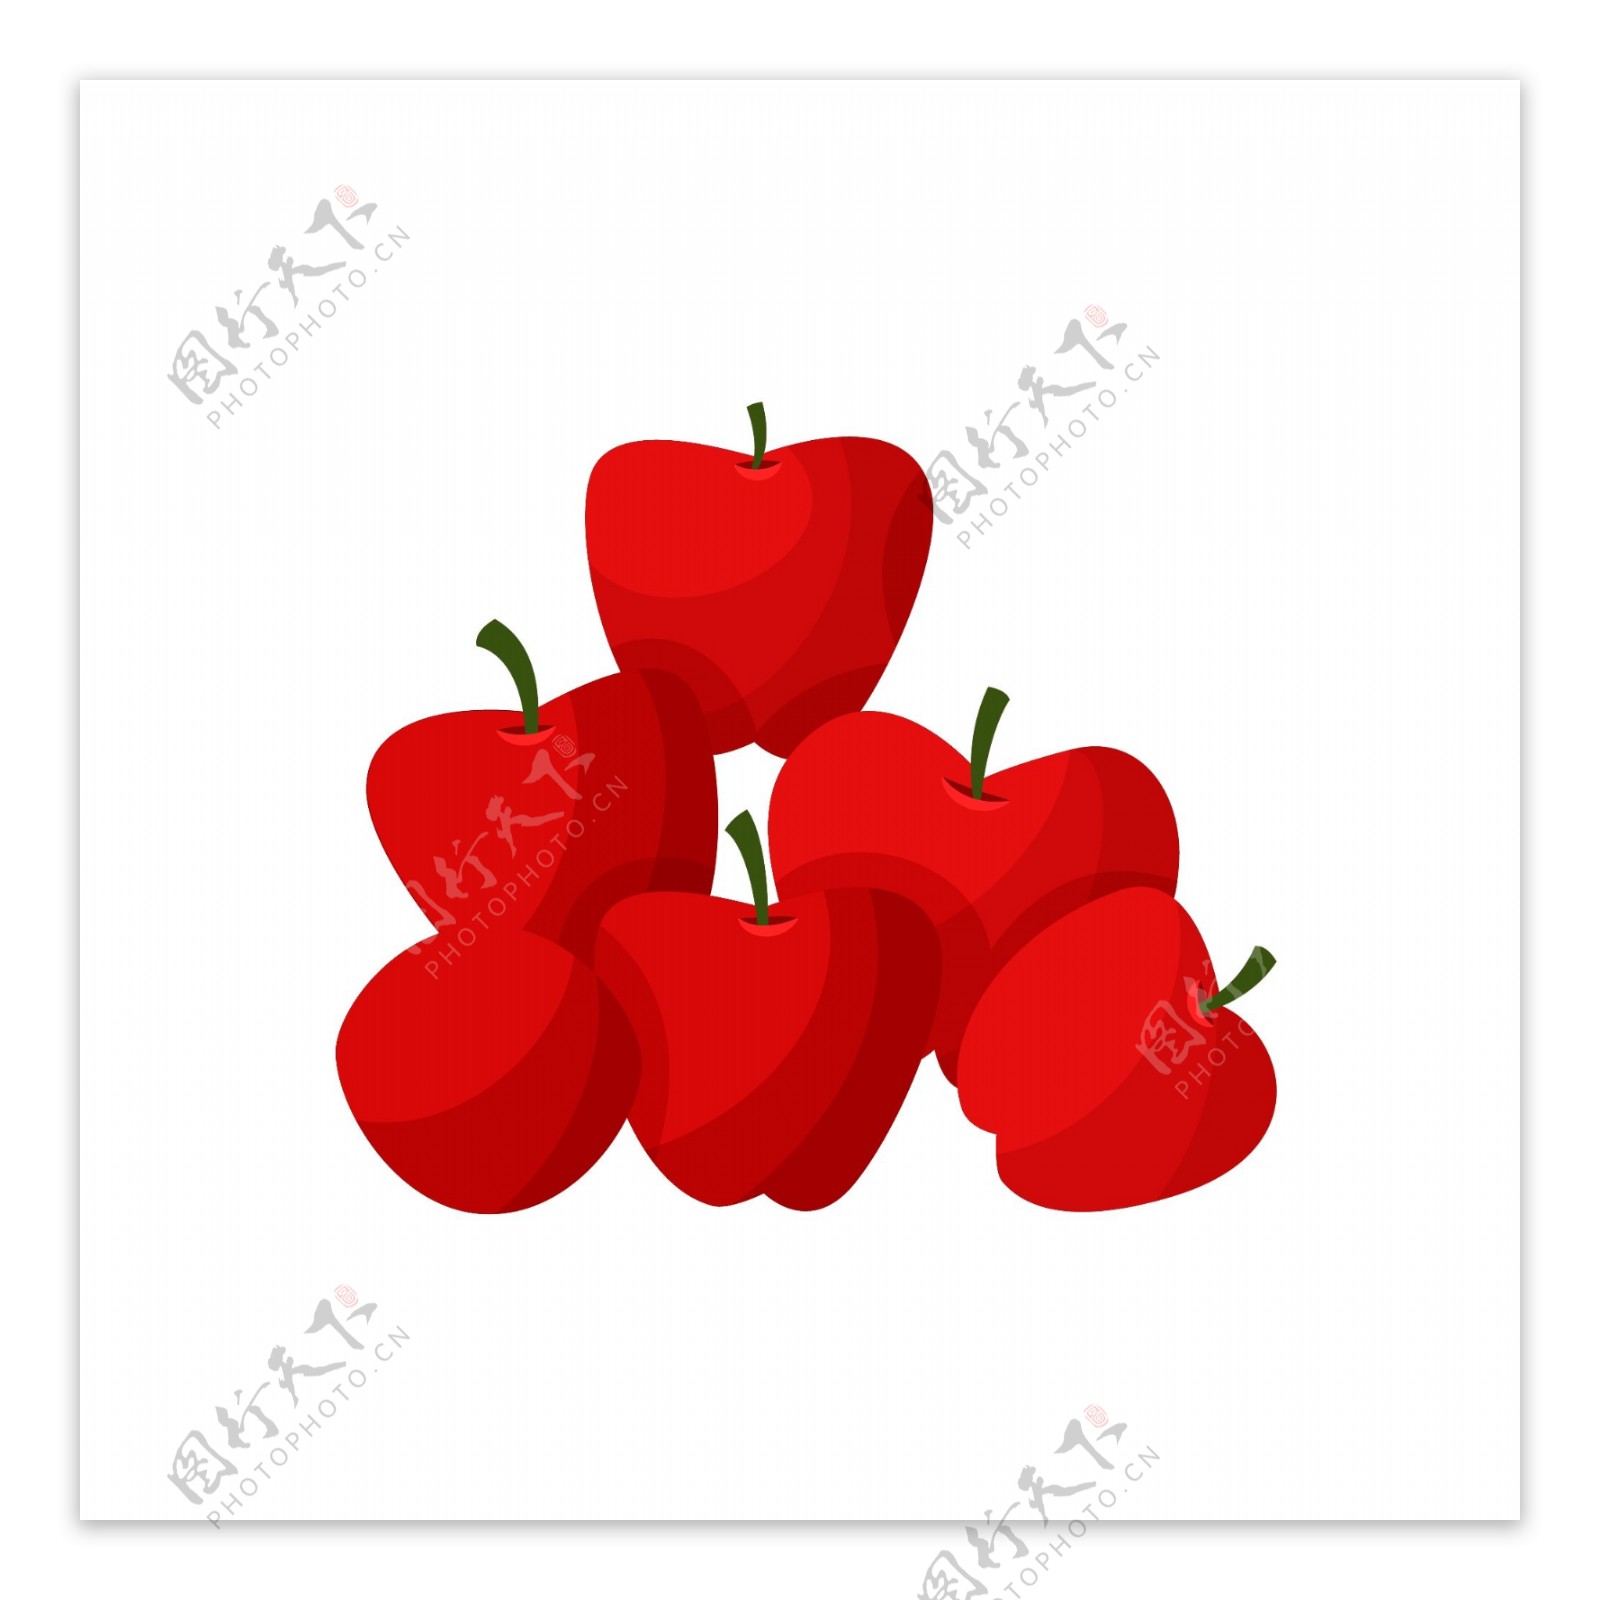 水果一堆红苹果矢量元素